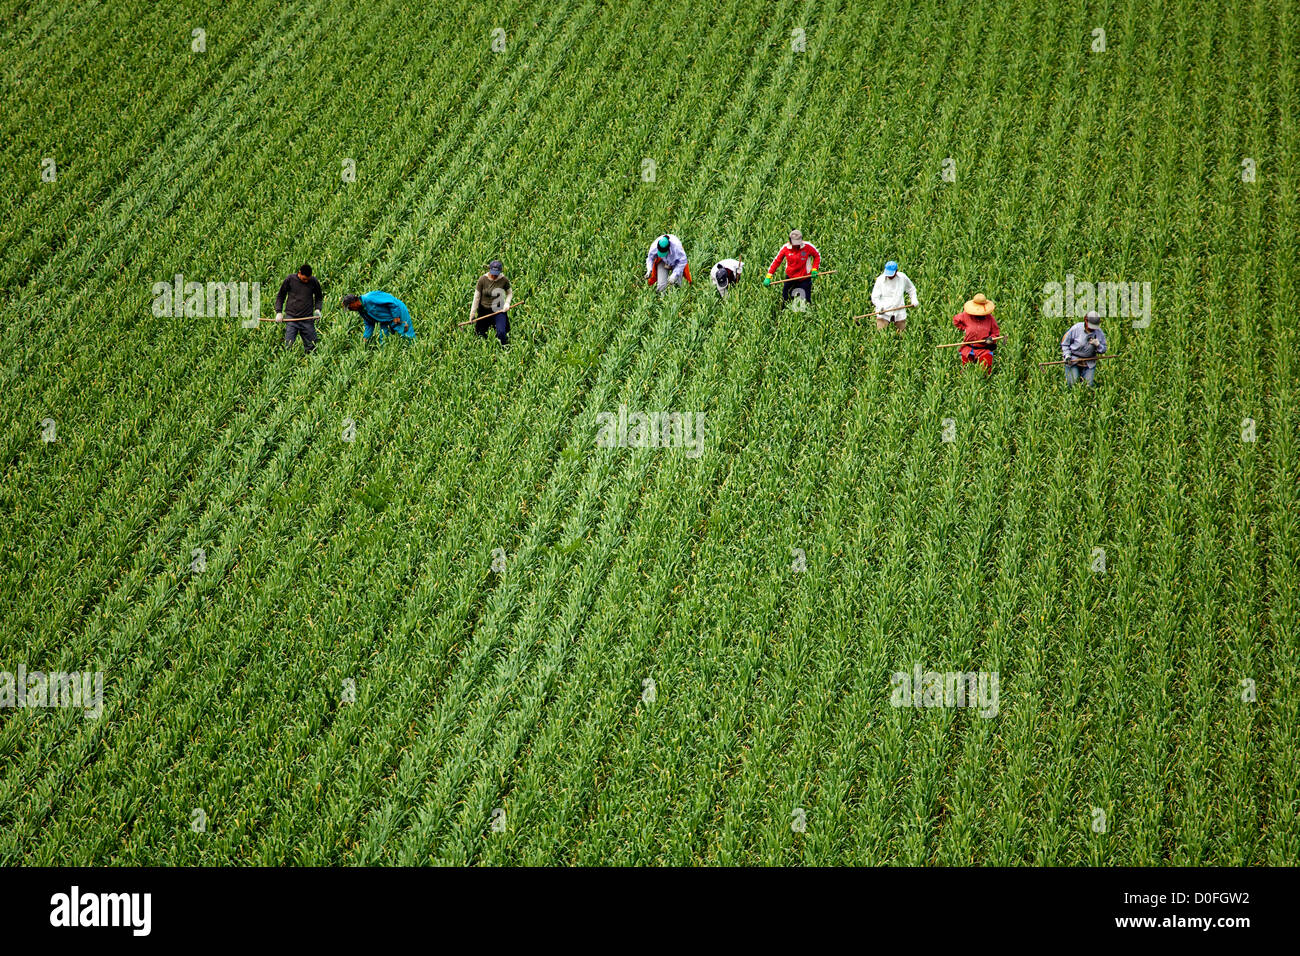 Laborers in a crop field Jornaleros en un campo de cultivo Stock Photo